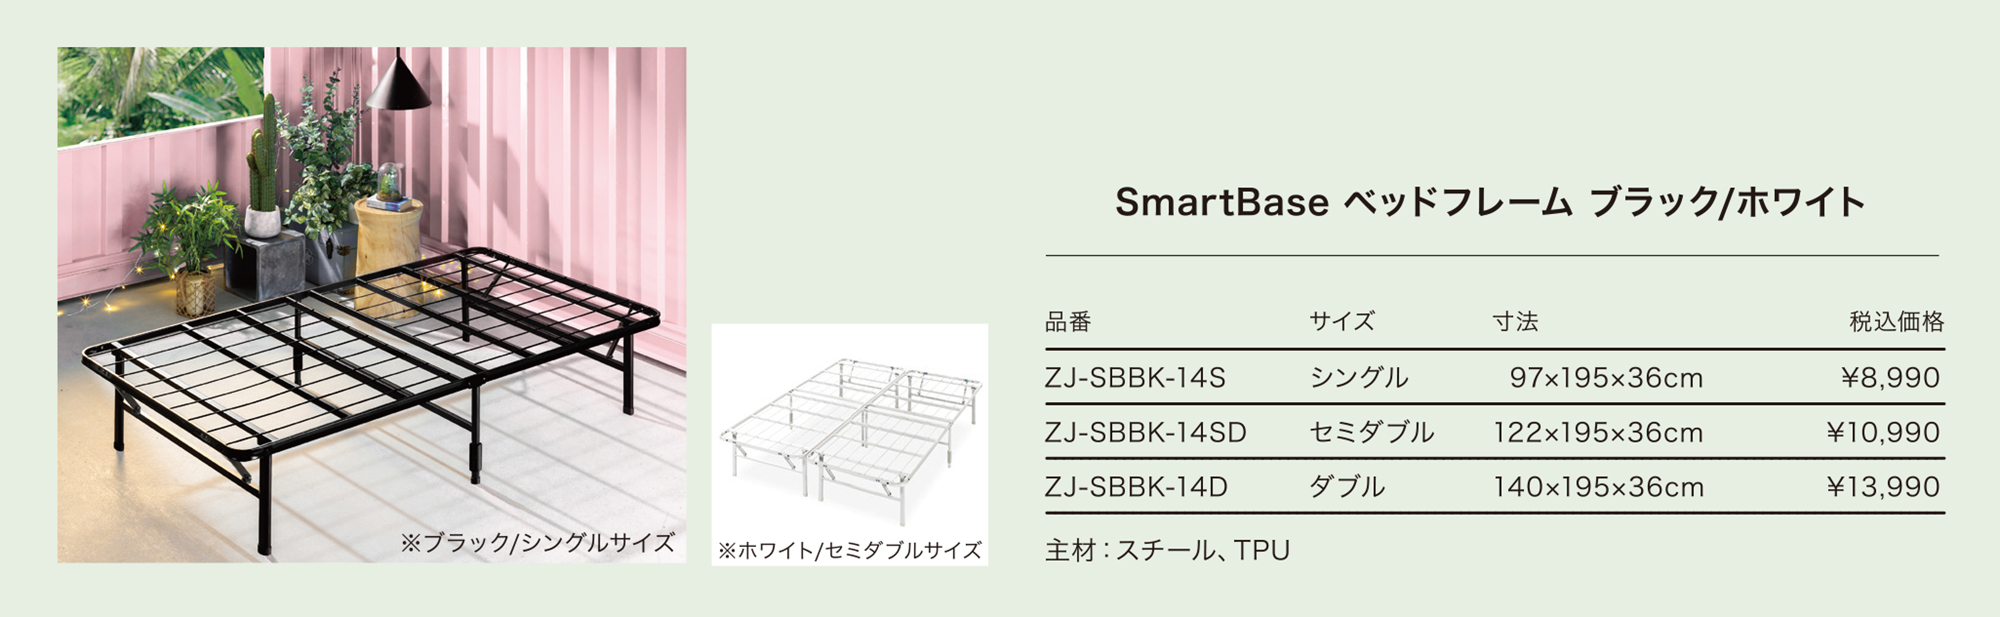 ベッドフレーム シングル 折りたたみ ブラック ホワイト 一人暮らし 収納 折り畳み パイプベッド スチール SmartBase スマートベース